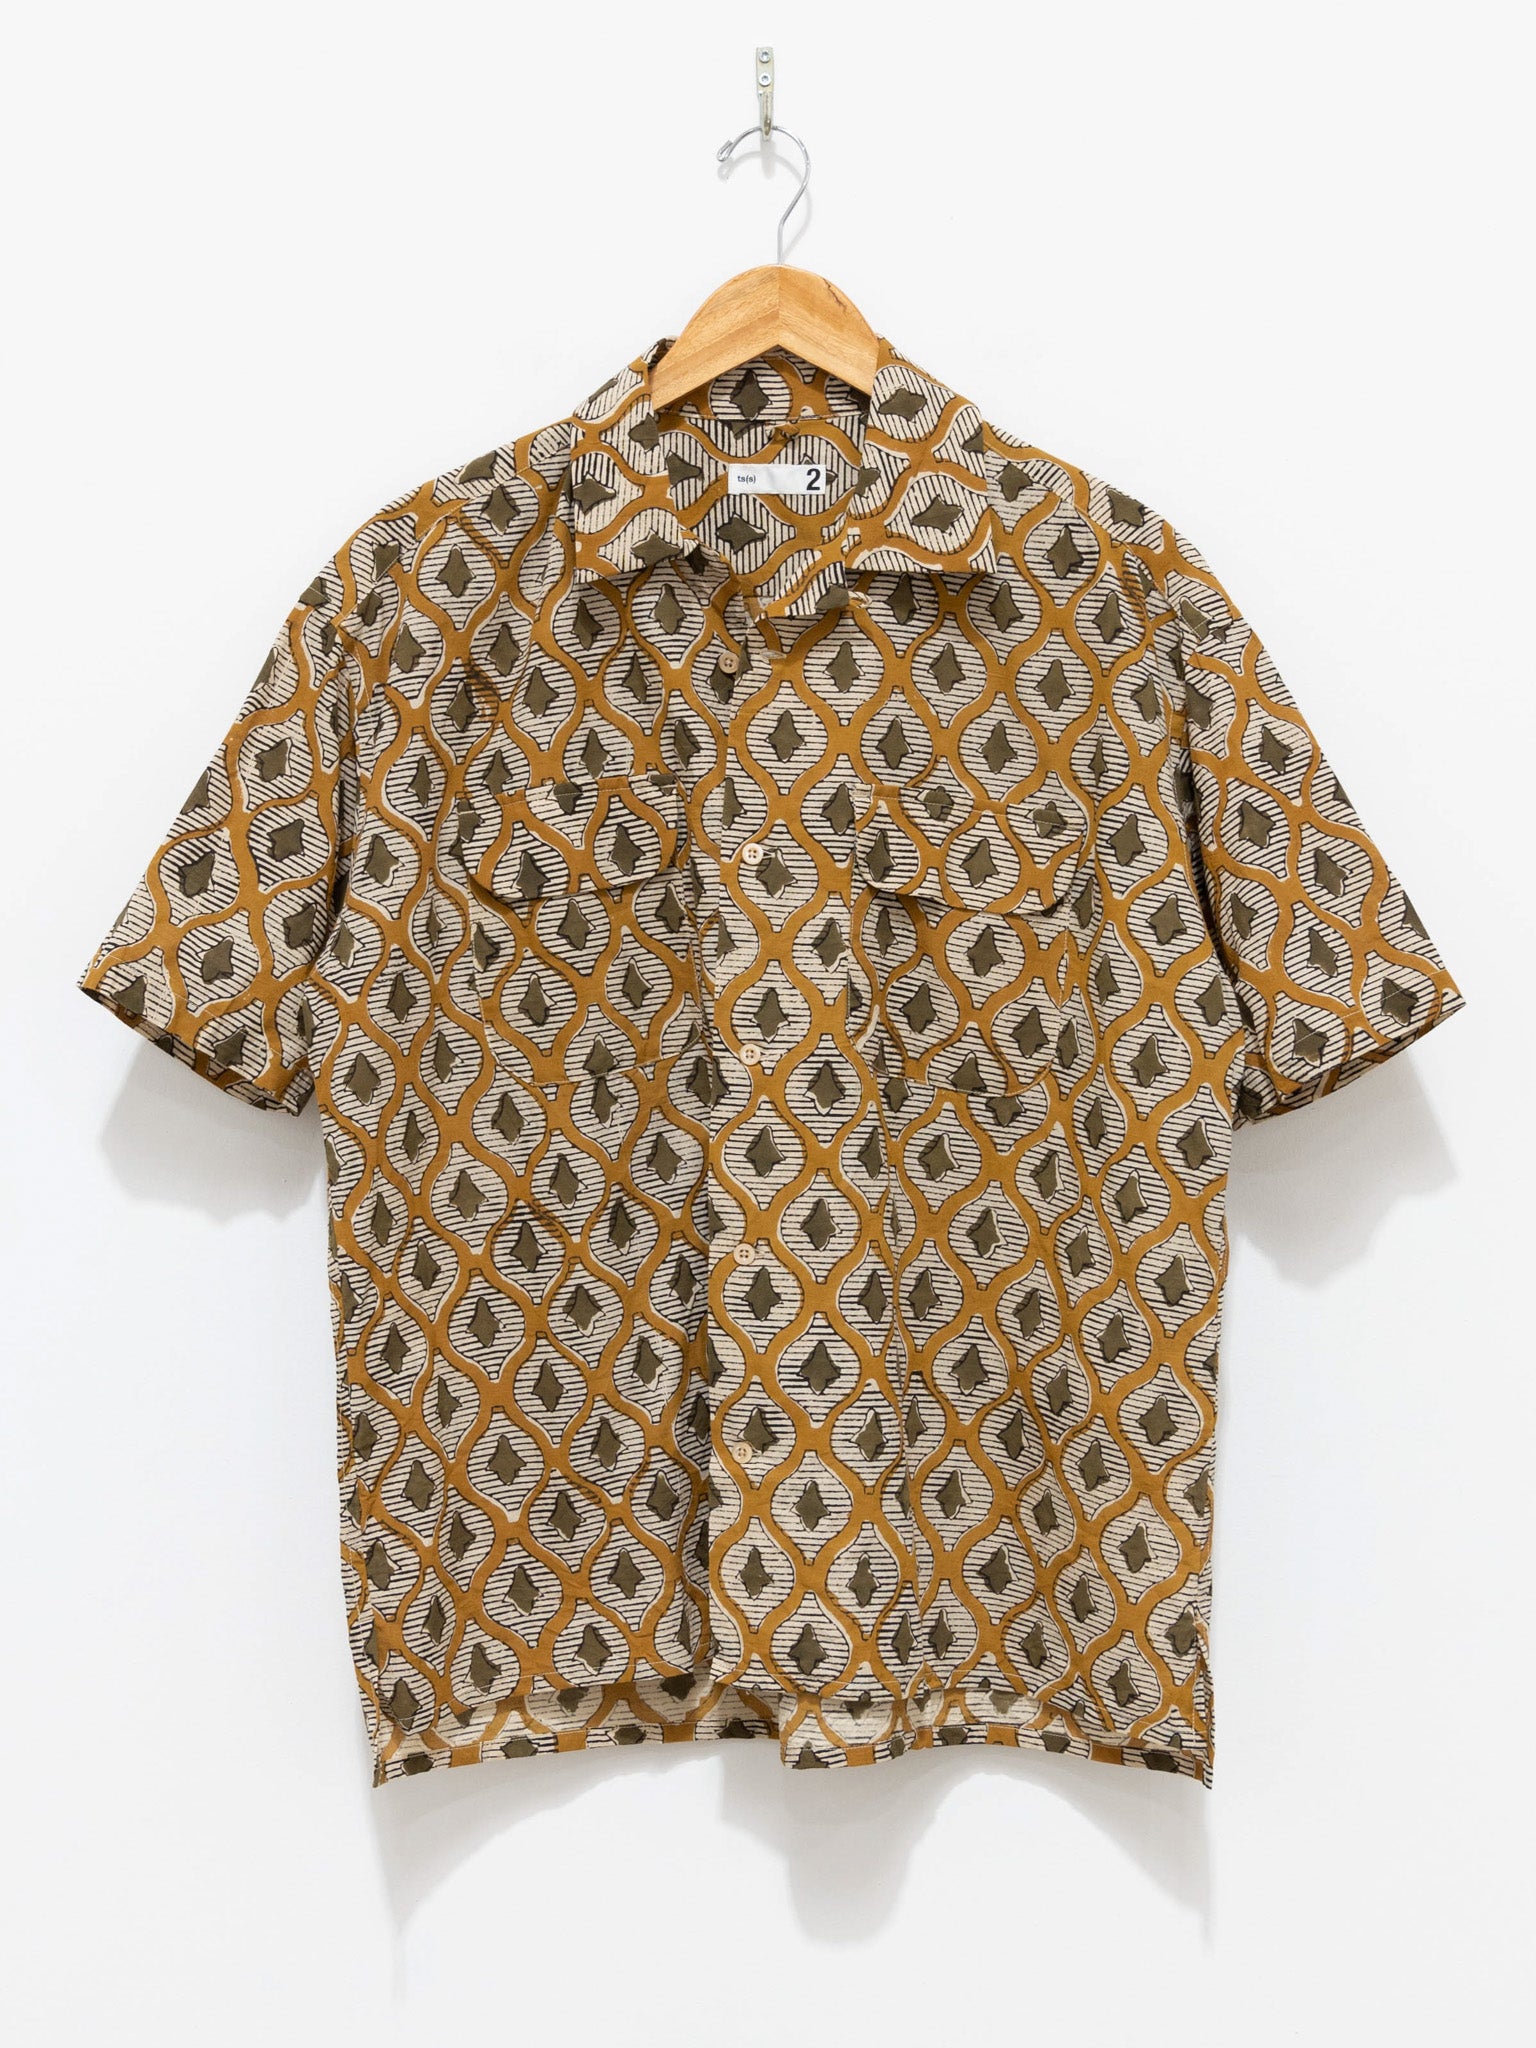 Namu Shop - ts(s) - Sleeve Round Flap Short Khaki Shirt